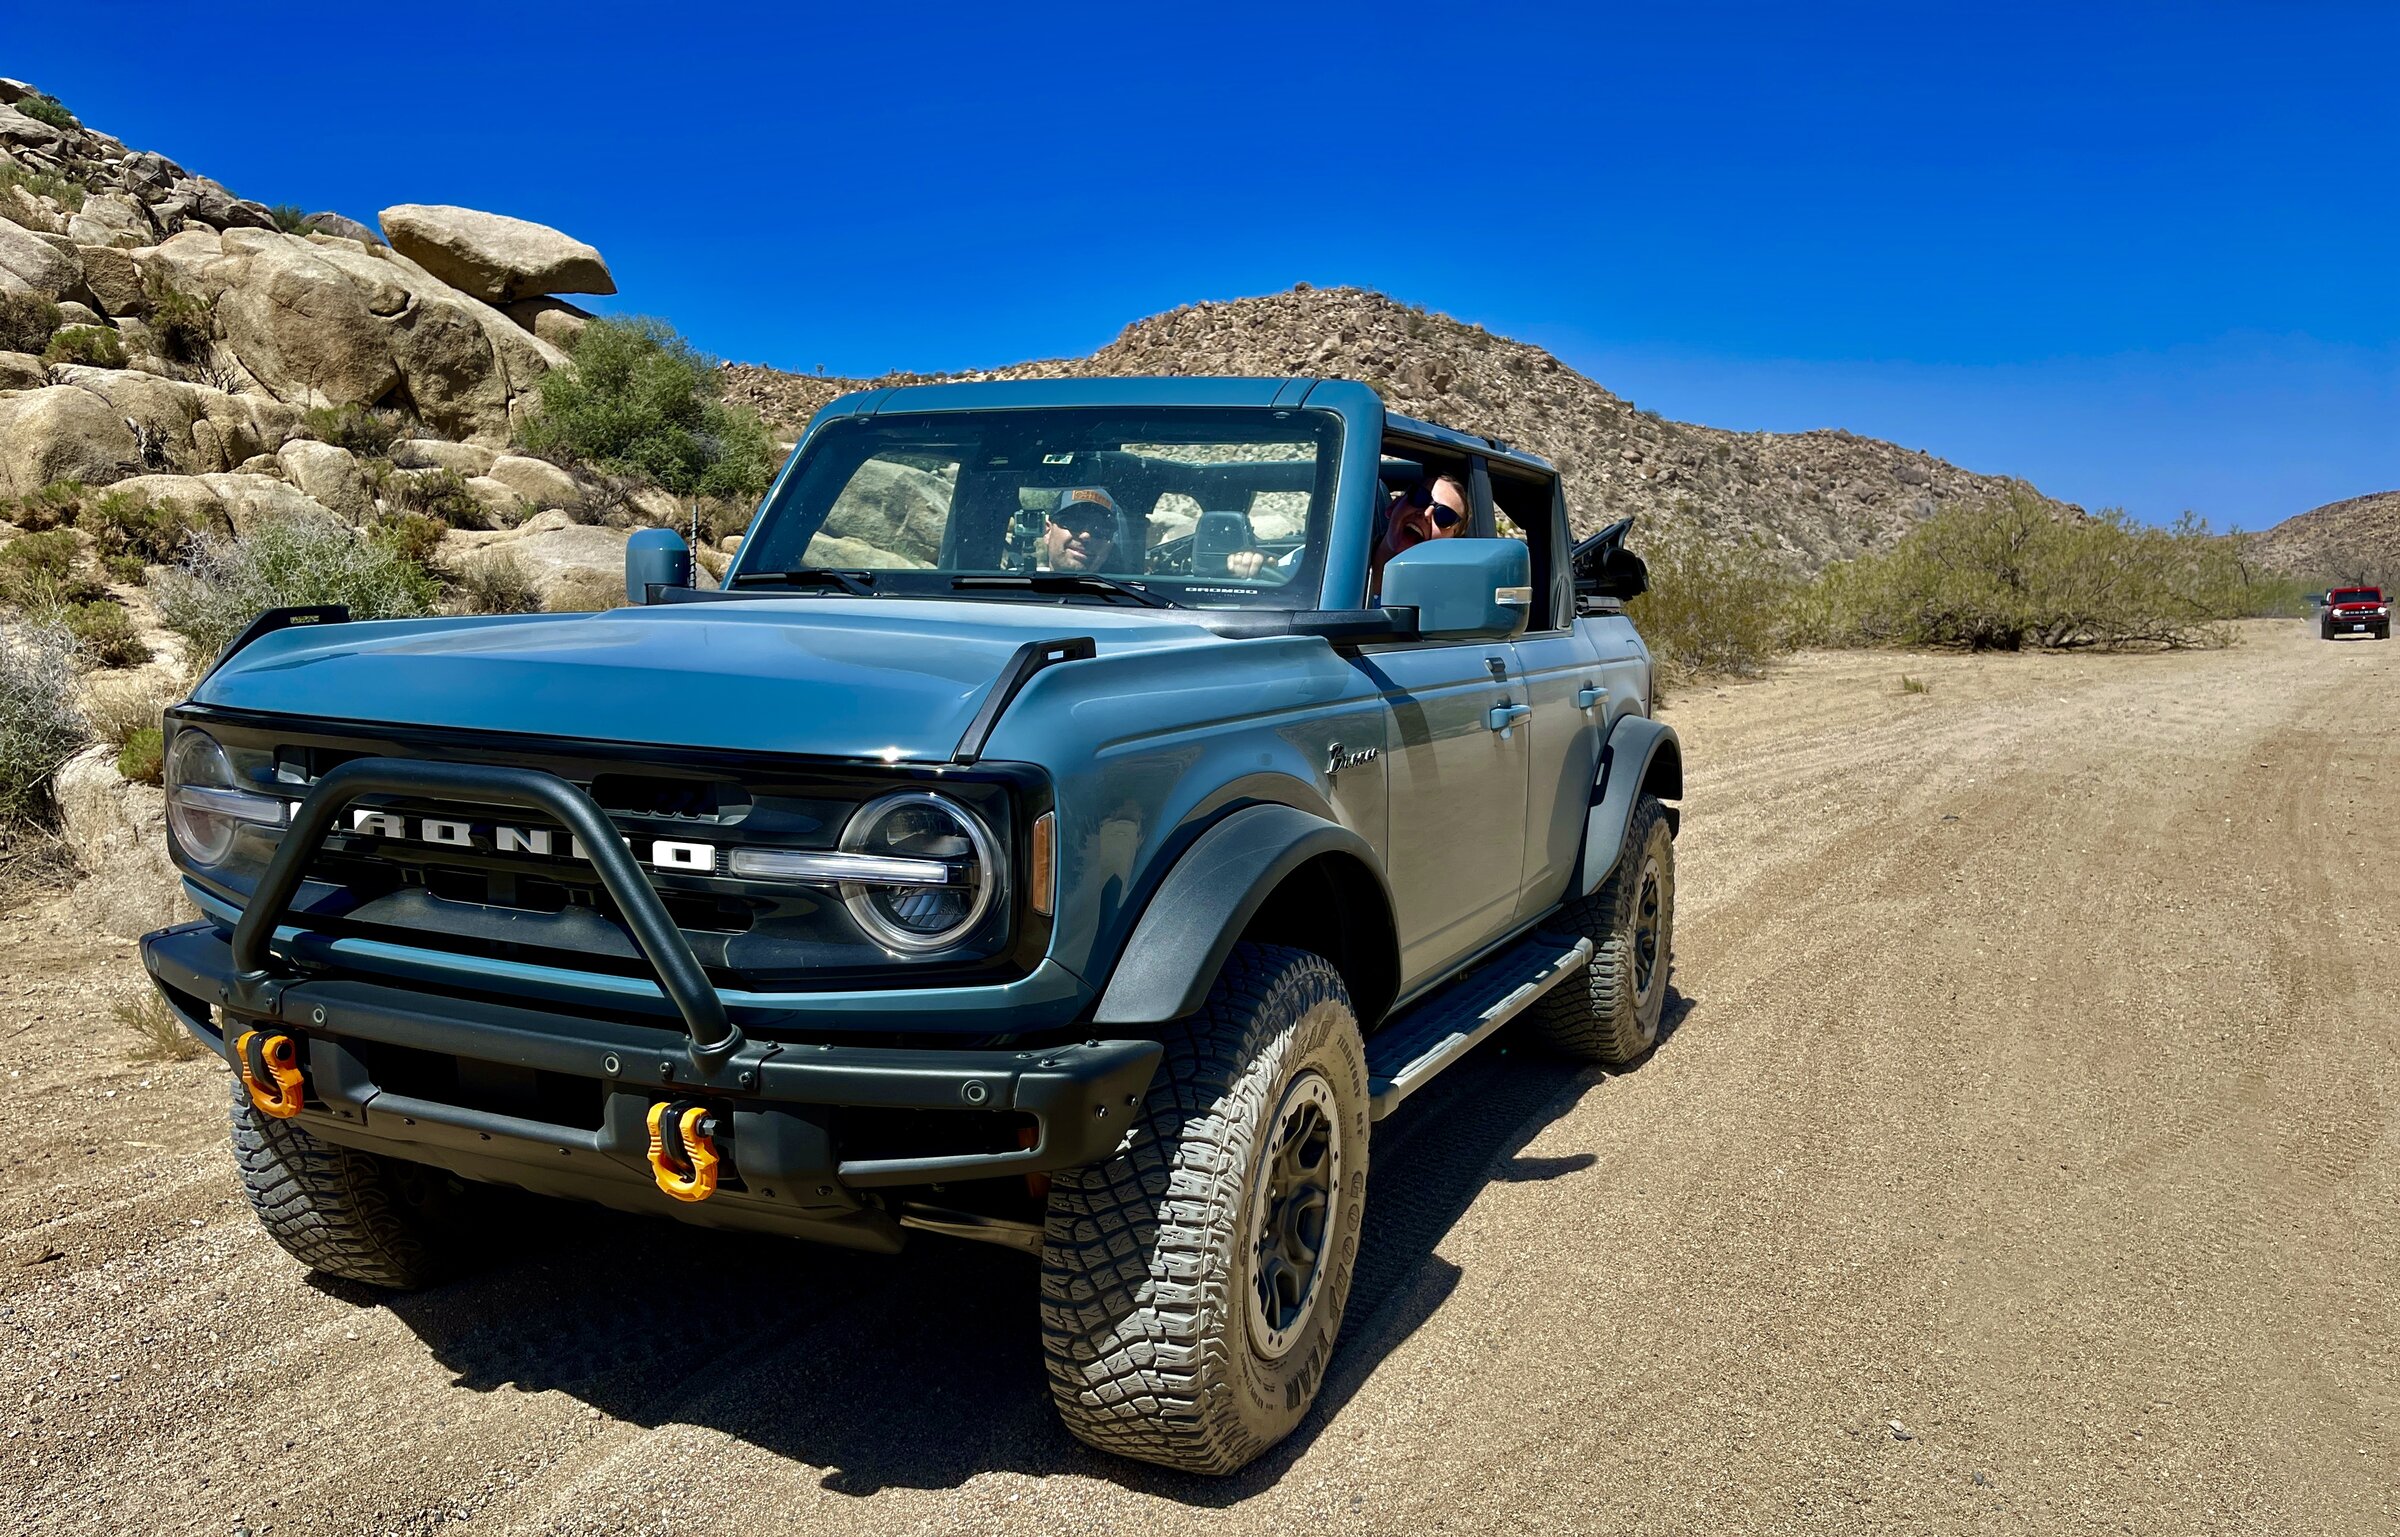 Ford Bronco Rattlesnake Canyon - Bronco Trail Meetup & Report IMG_7018.JPG